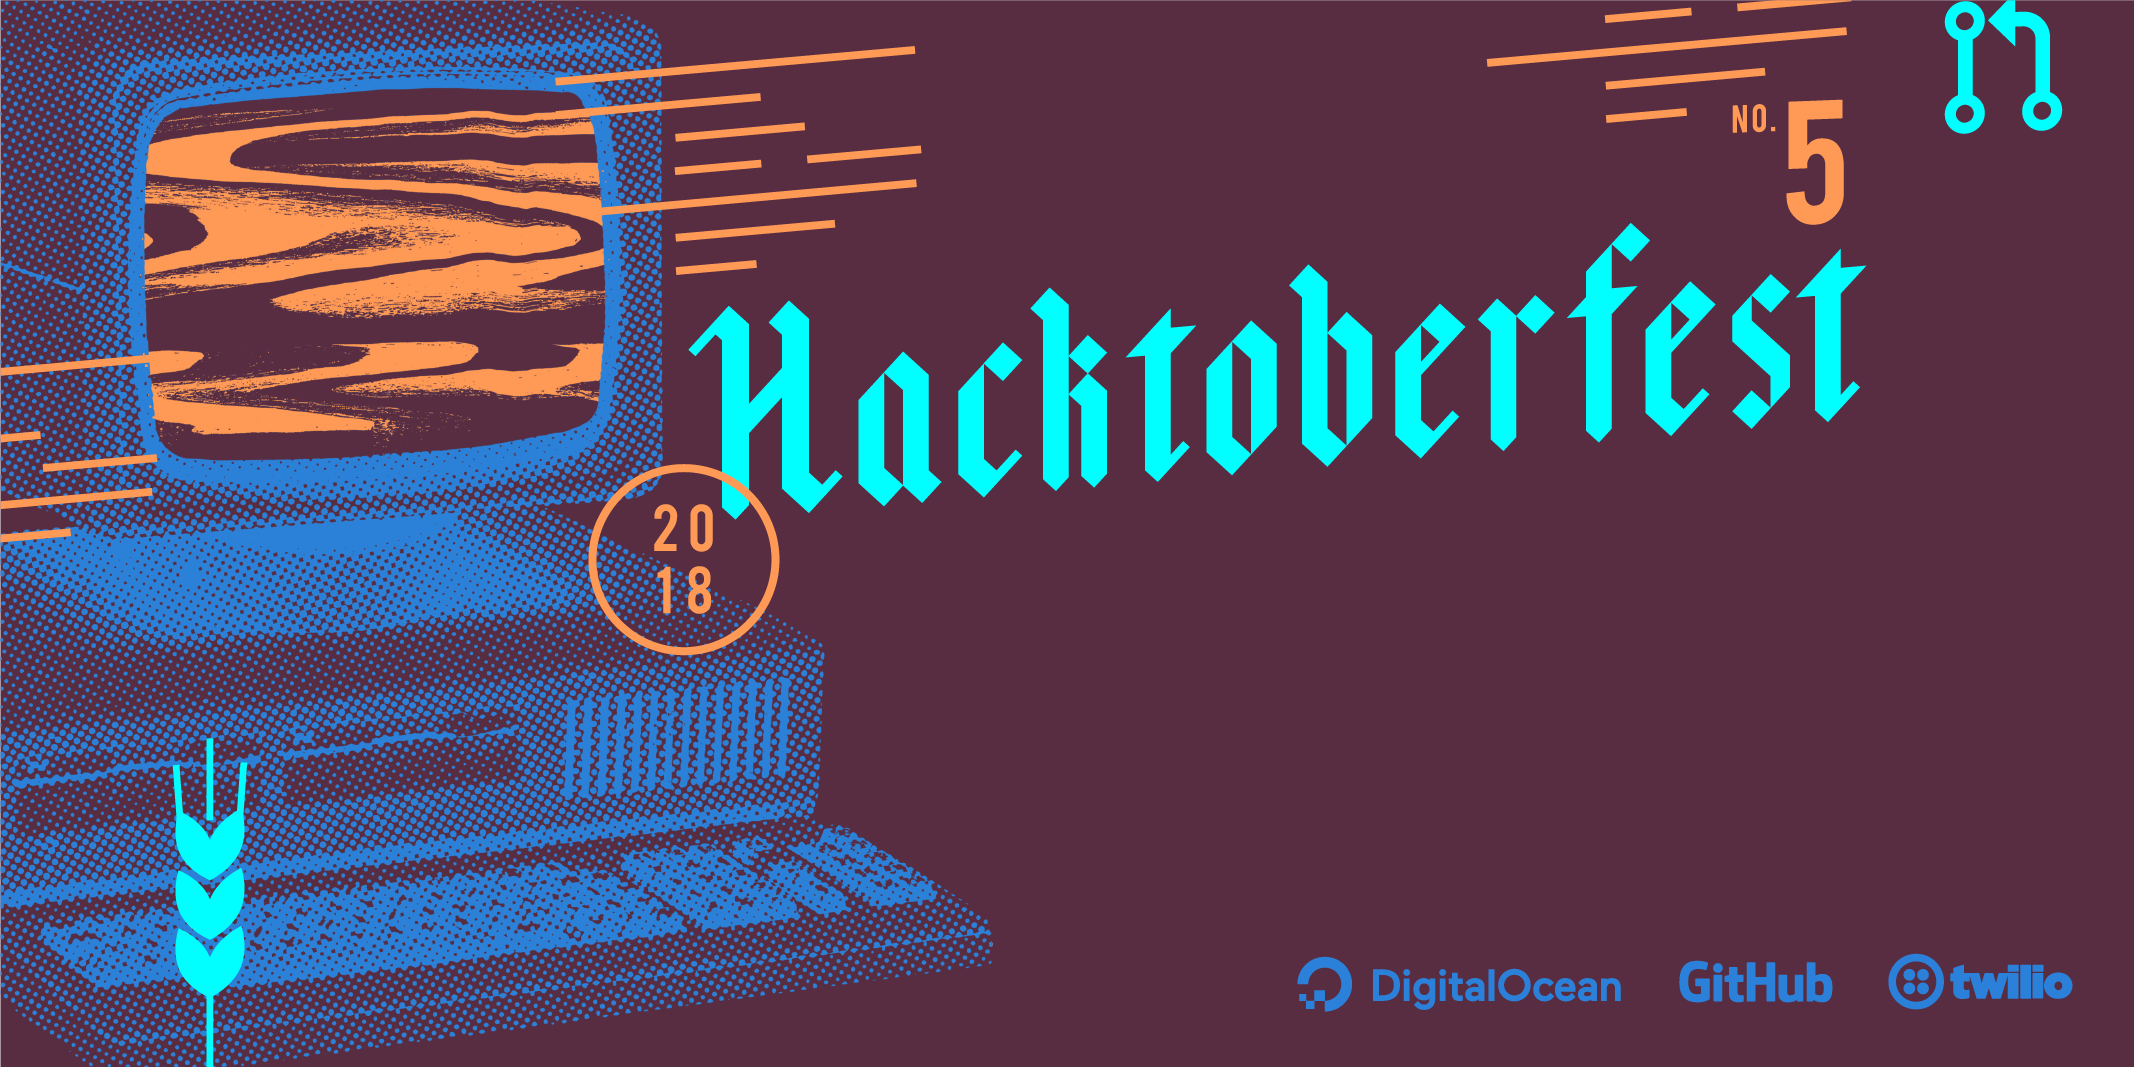 My Hacktoberfest 2018 Docker Wishlist: How You Can Help Open Source